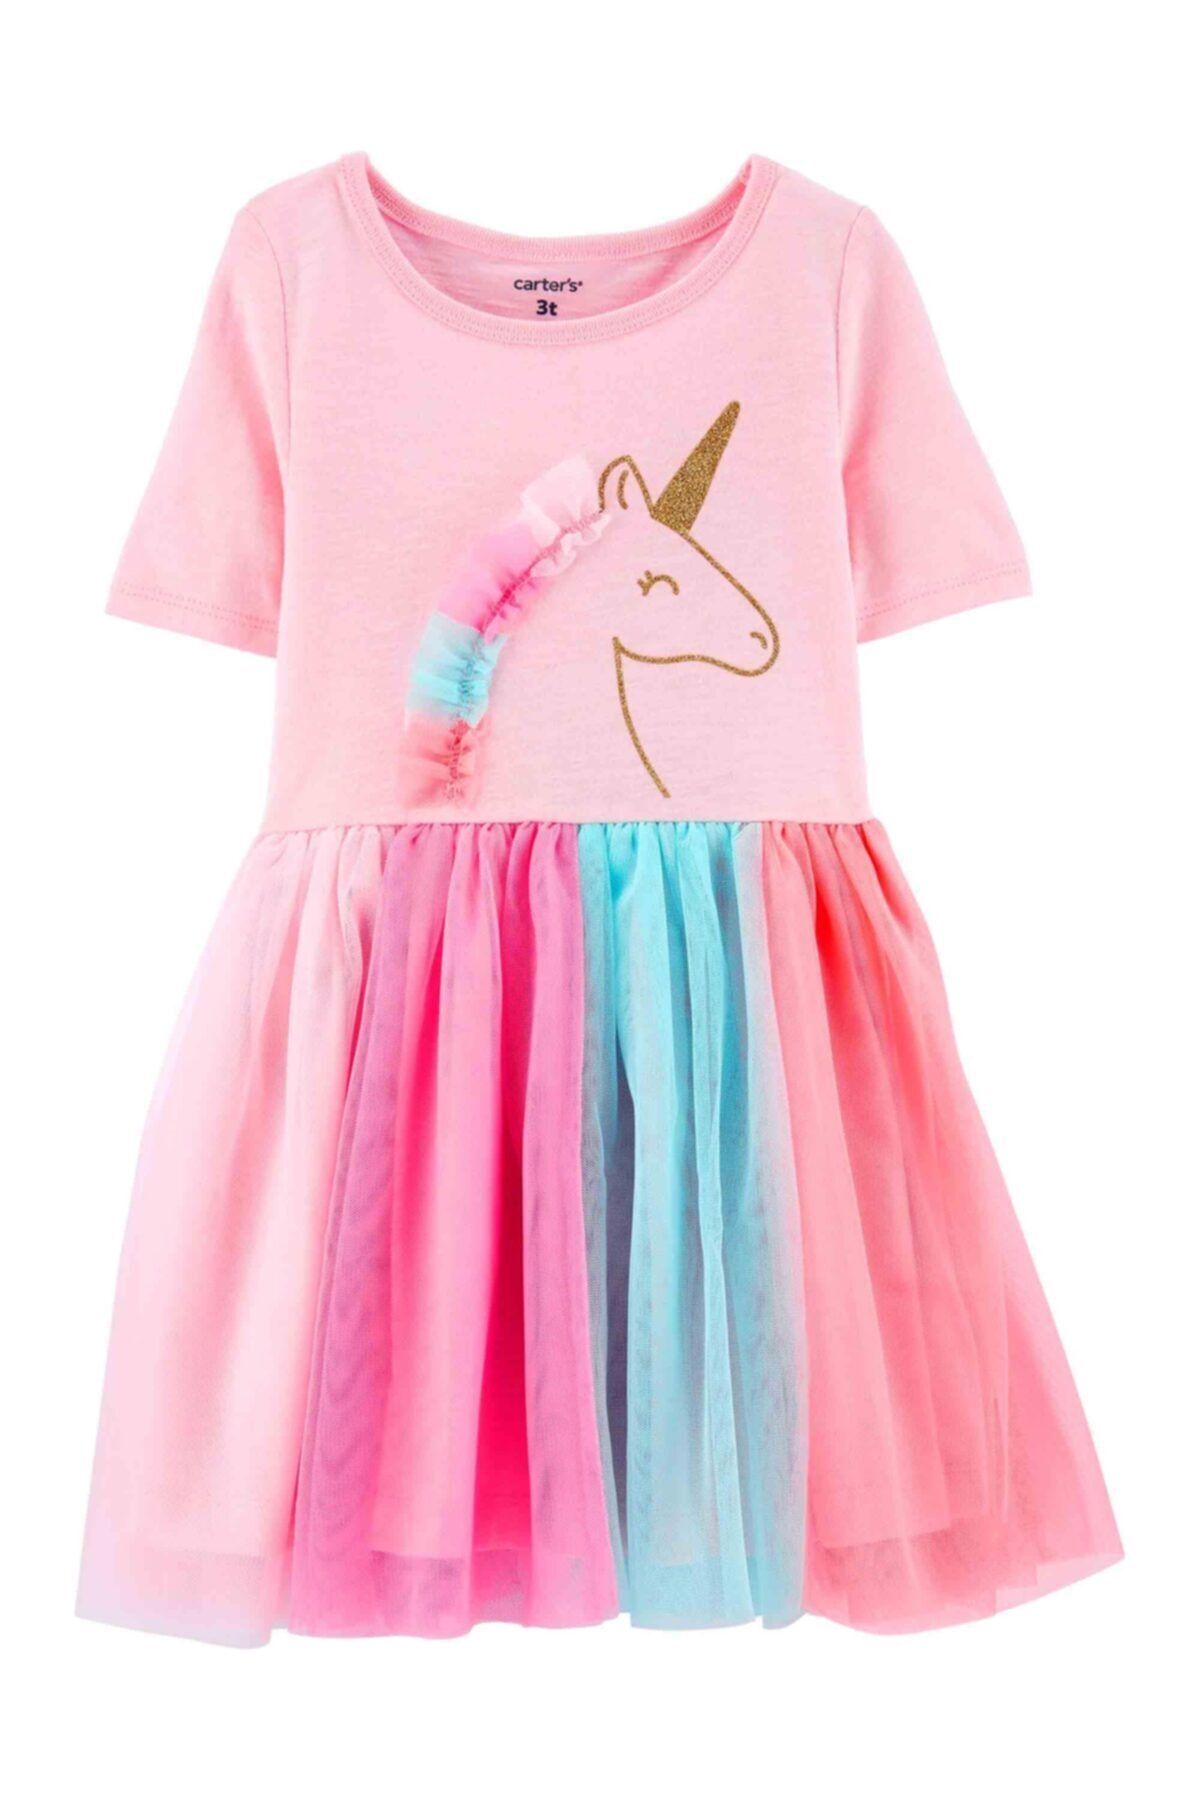 Carter's Kız Çocuk Unicorn Baskılı Kısa Kollu Elbise Pembe